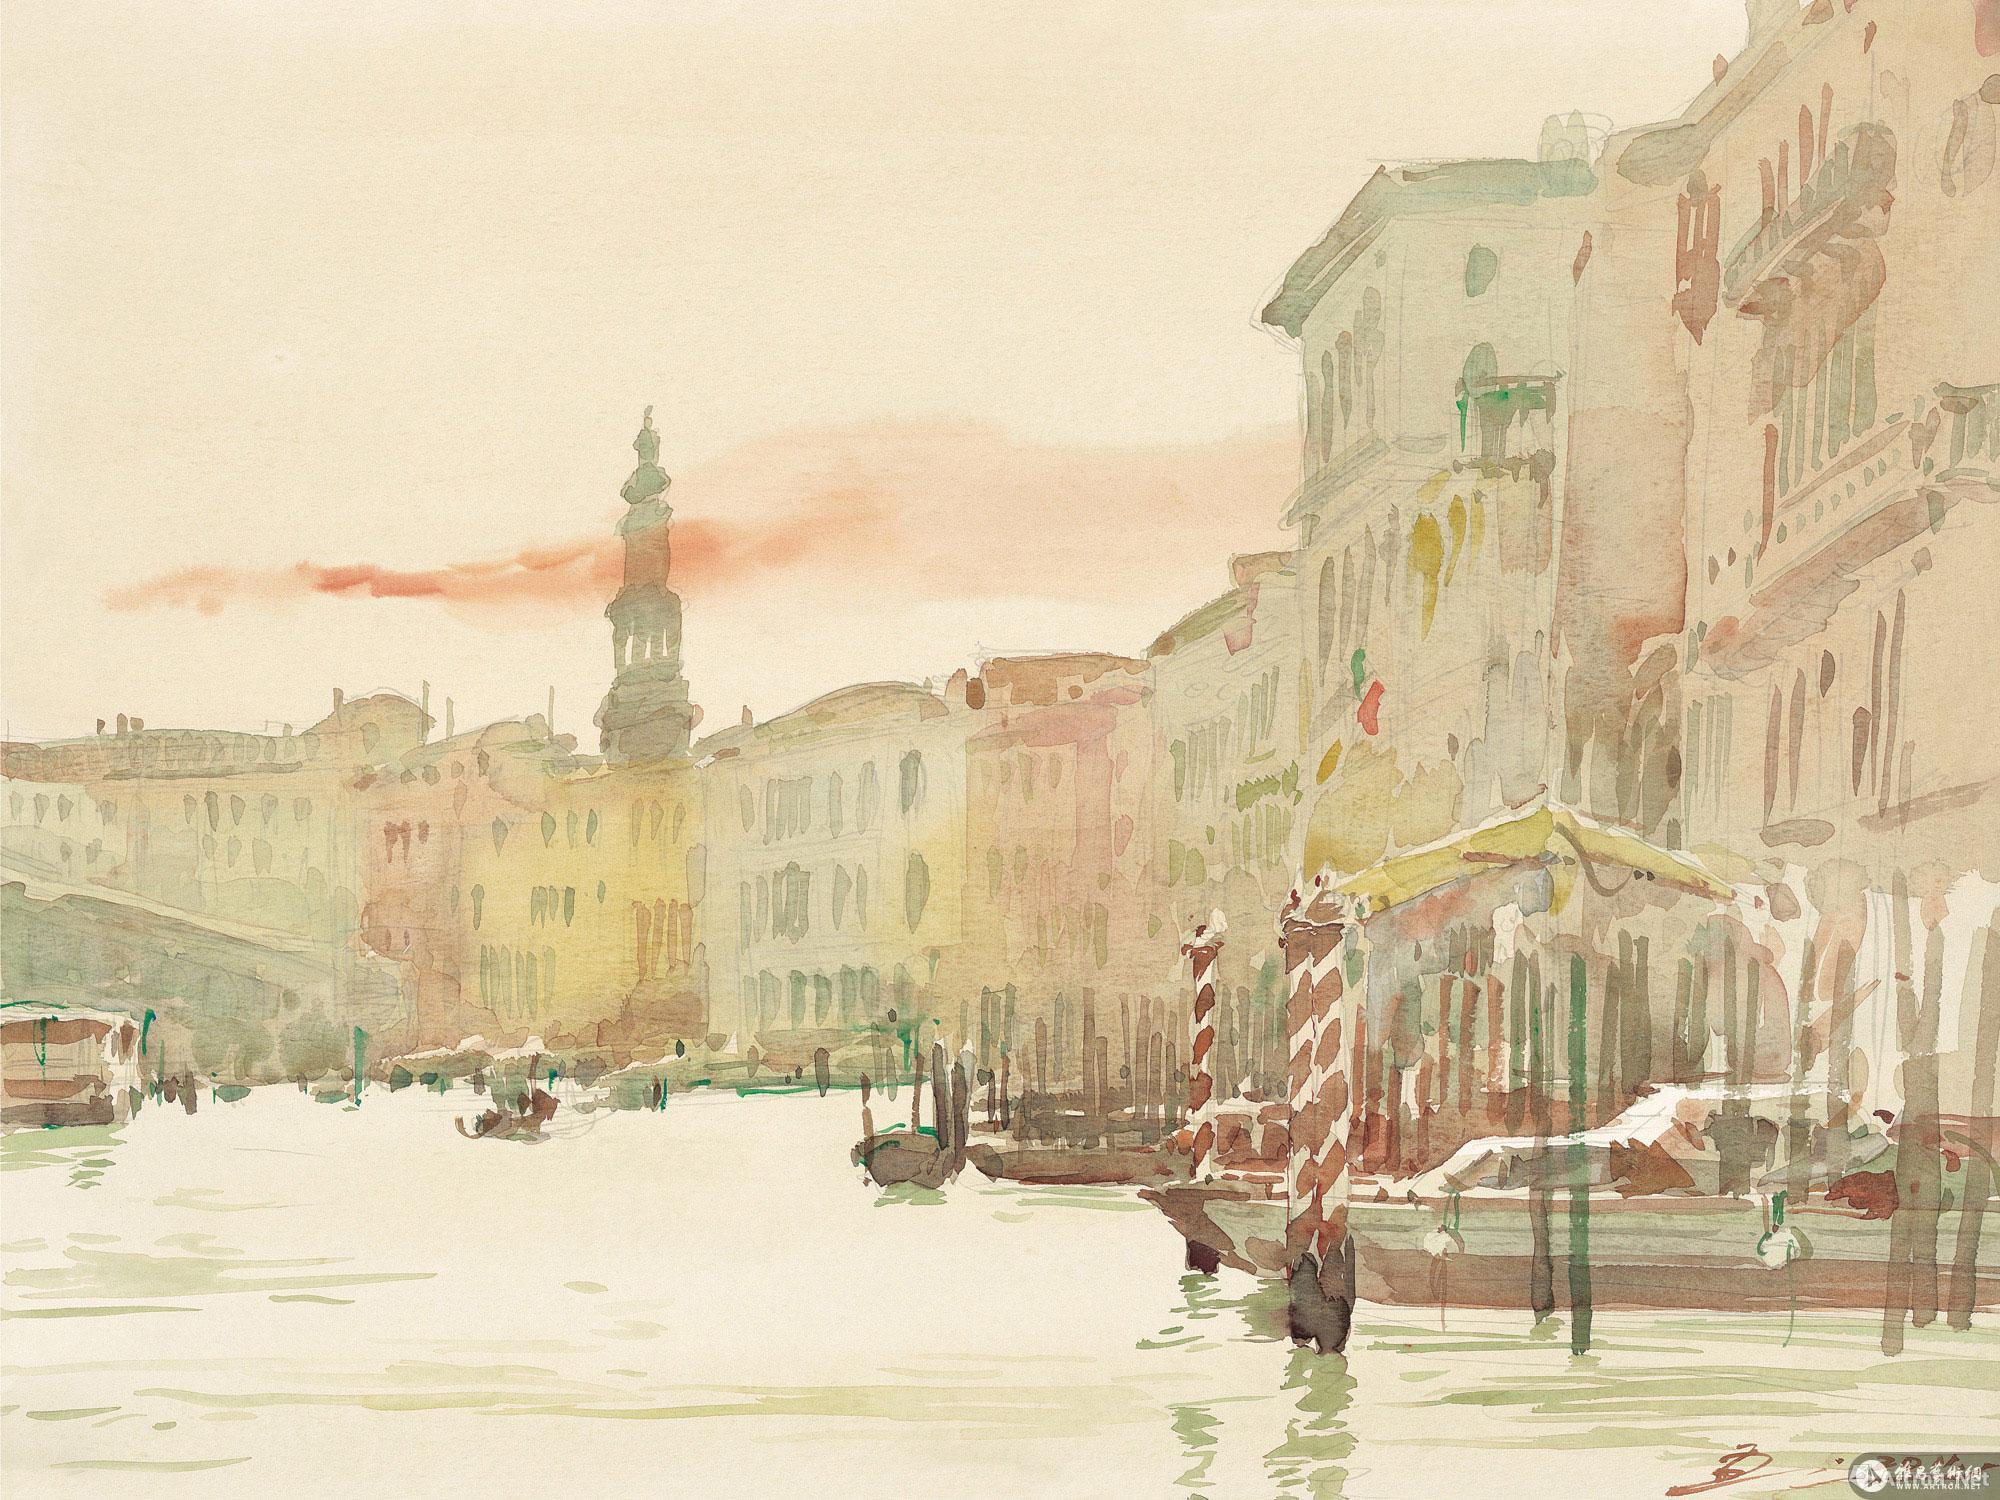 威尼斯印象No.3 No.3 of the Impressions of Venice